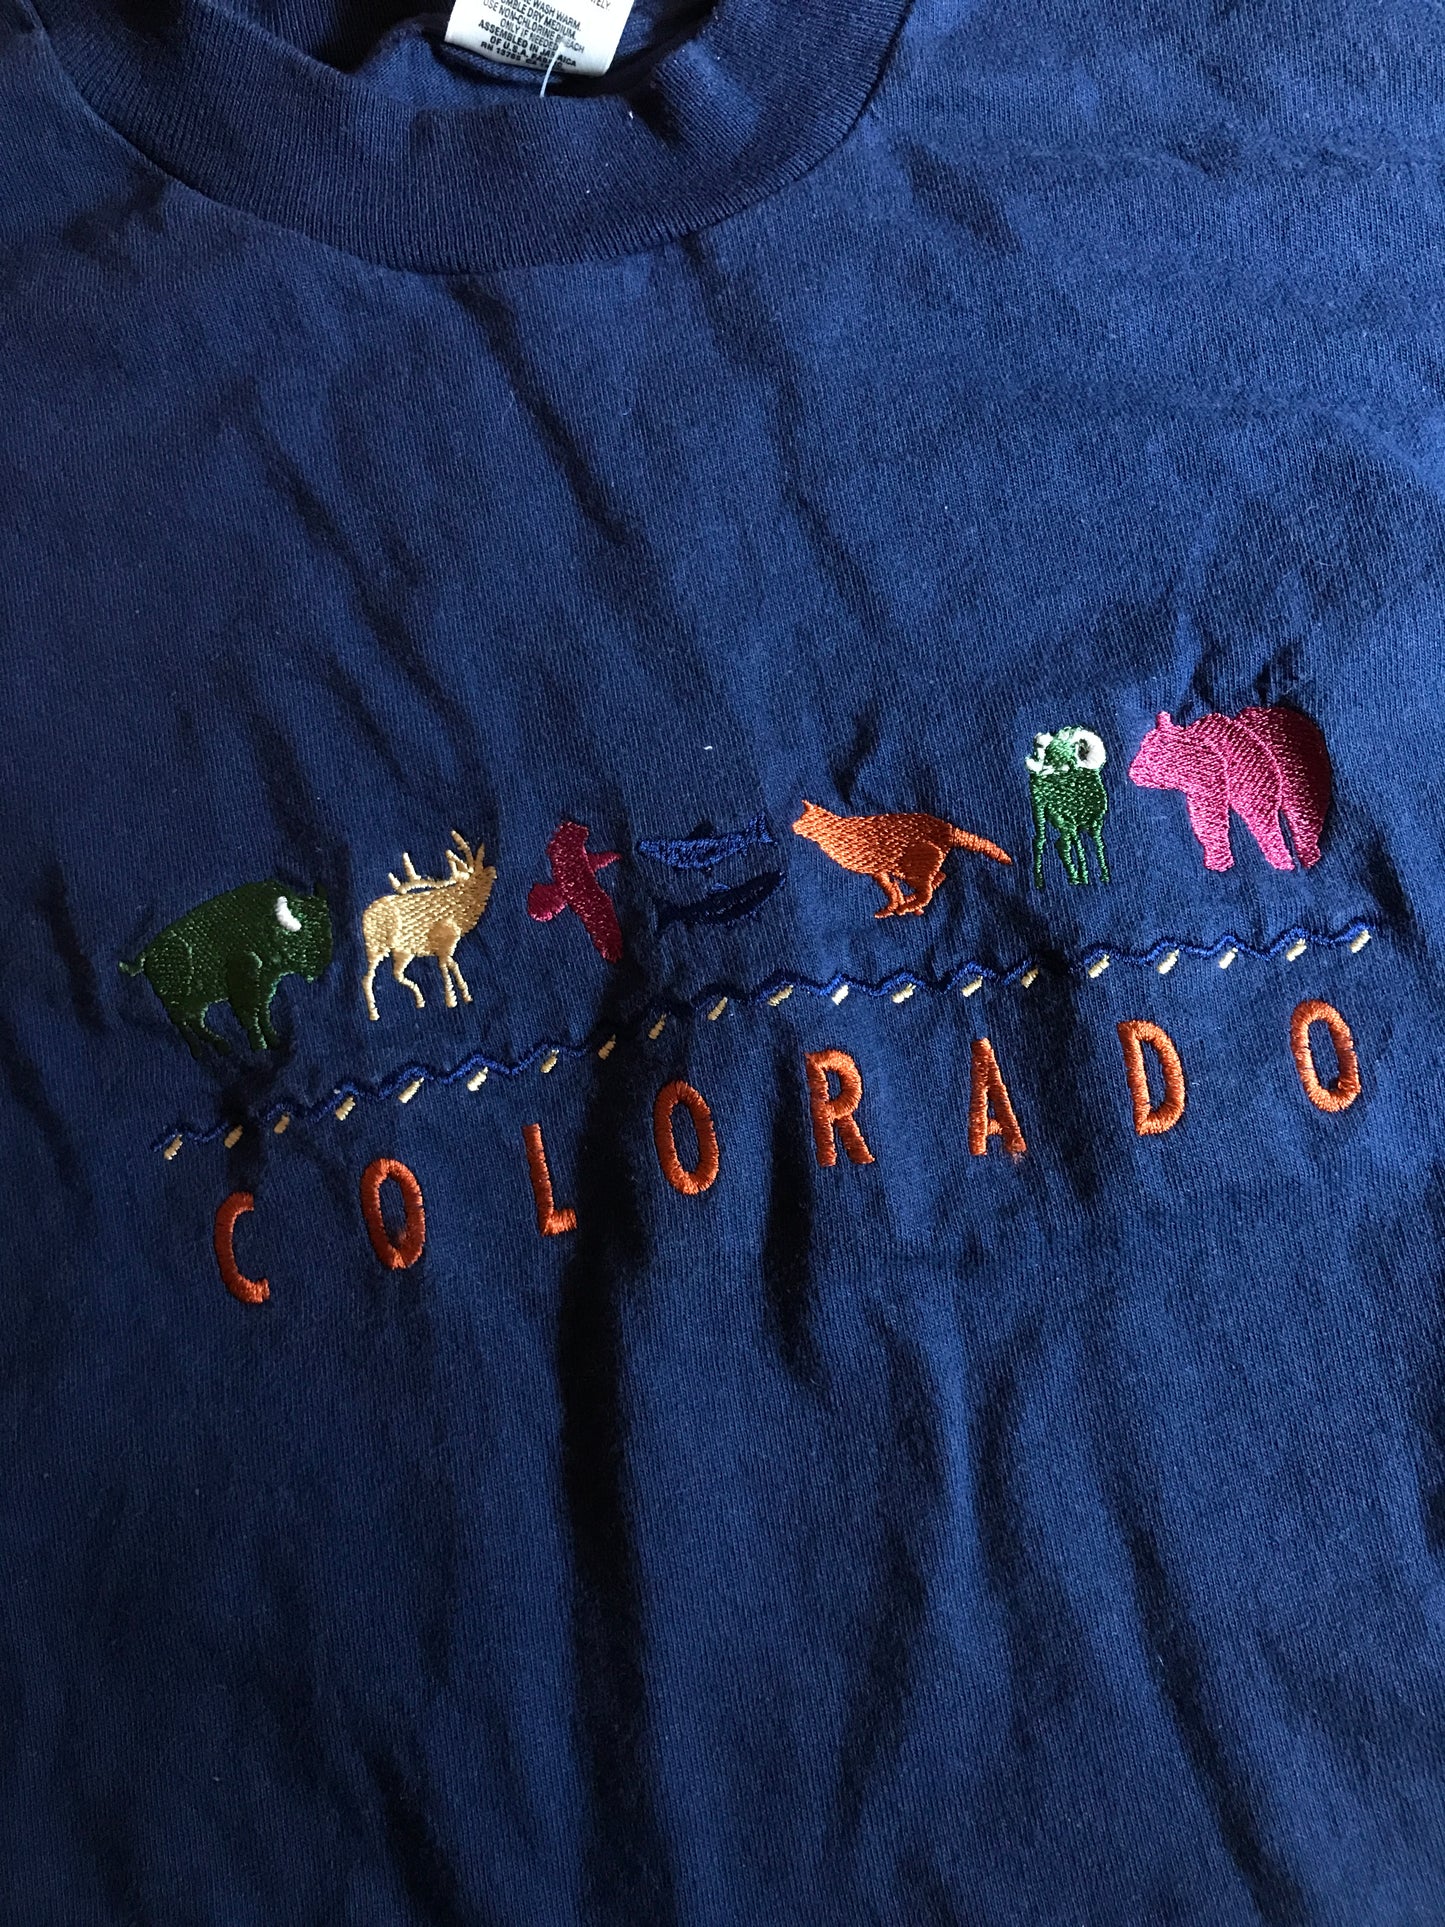 Vintage Colorado T-shirt